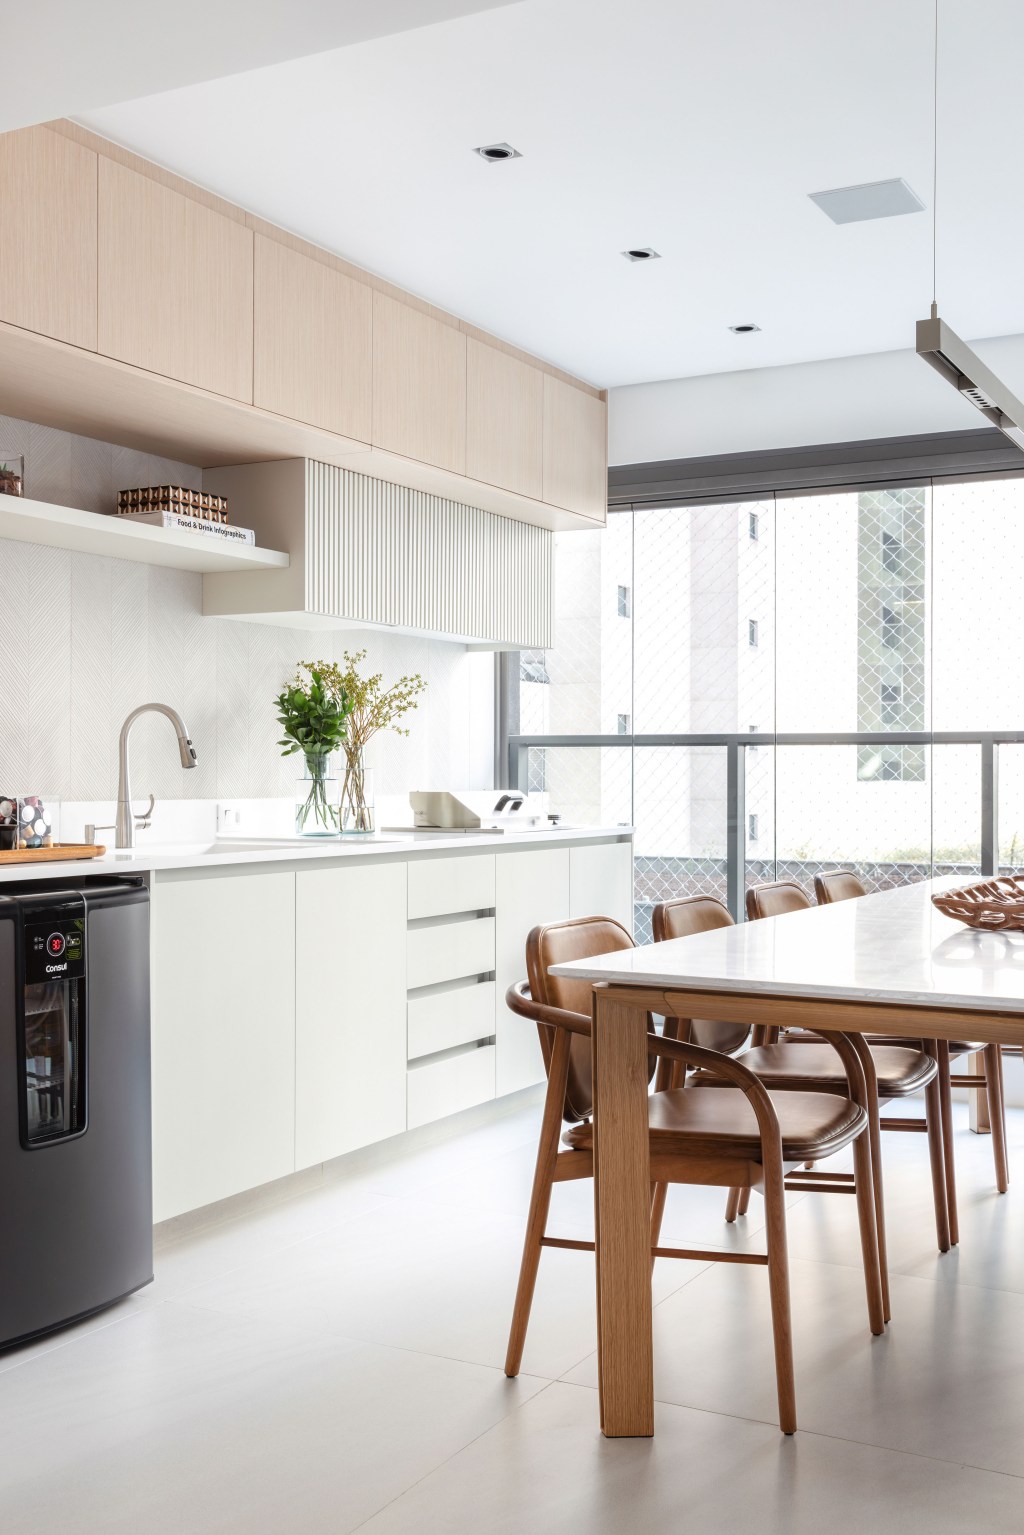 Décor neutro e ambientes integrados e fluidos marcam apartamento de 140 m². Projeto de Paula Muller. Na foto, varanda gourmet com mesa de jantar e frigobar.